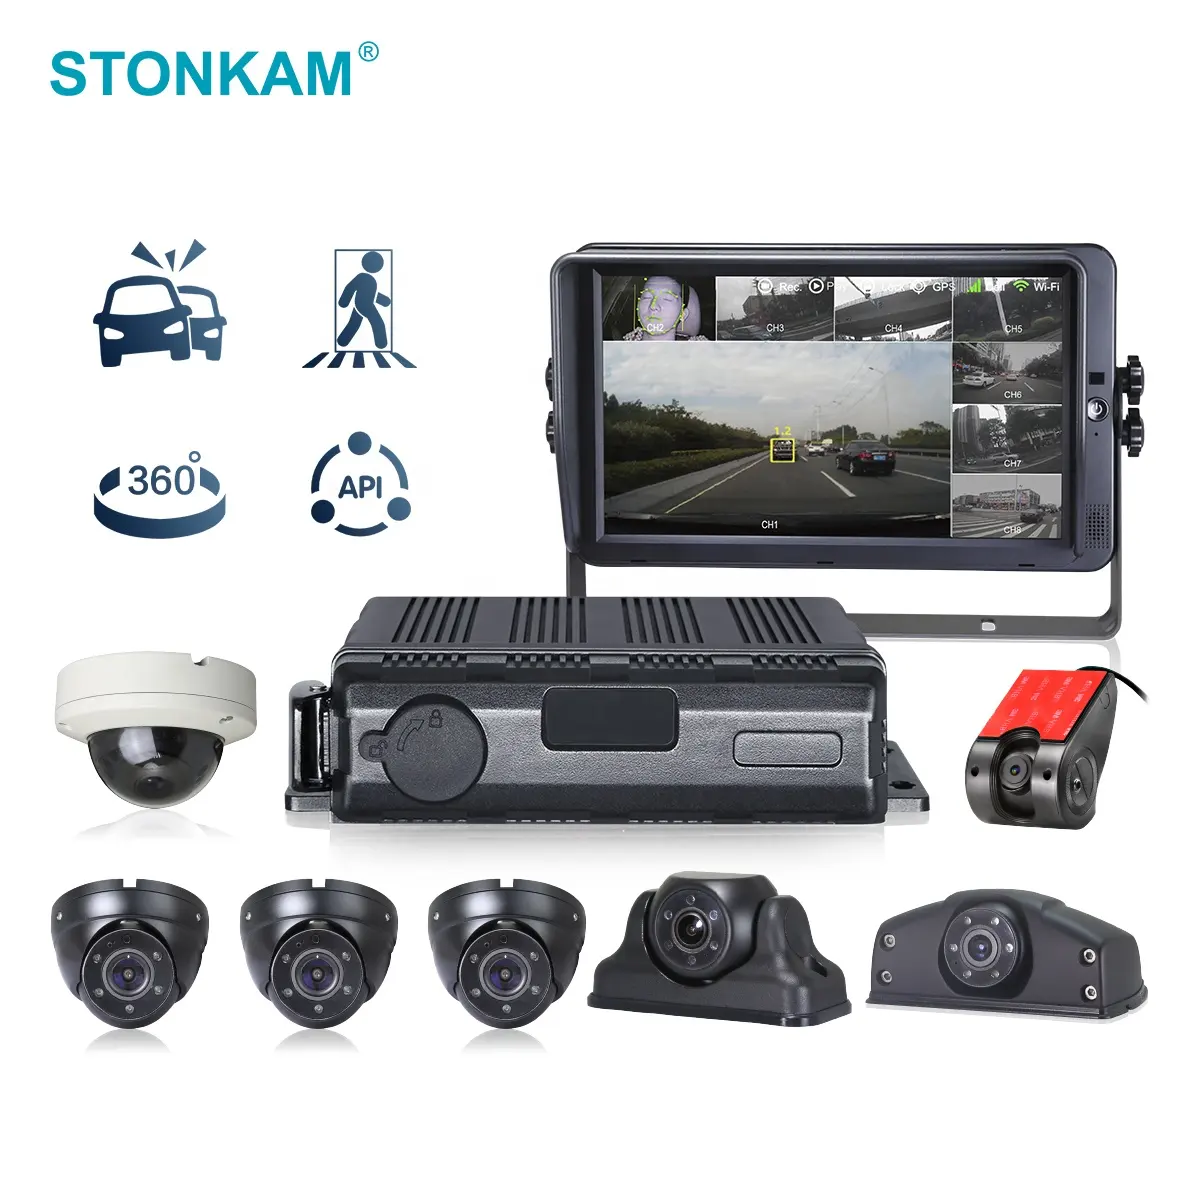 מערכת מצלמות רכב STONKAM 4G 8CH MDVR ADAS+DMS+BSD/360 אלגוריתם IP69K עמיד למים לאבטחת רכב וניהול צי